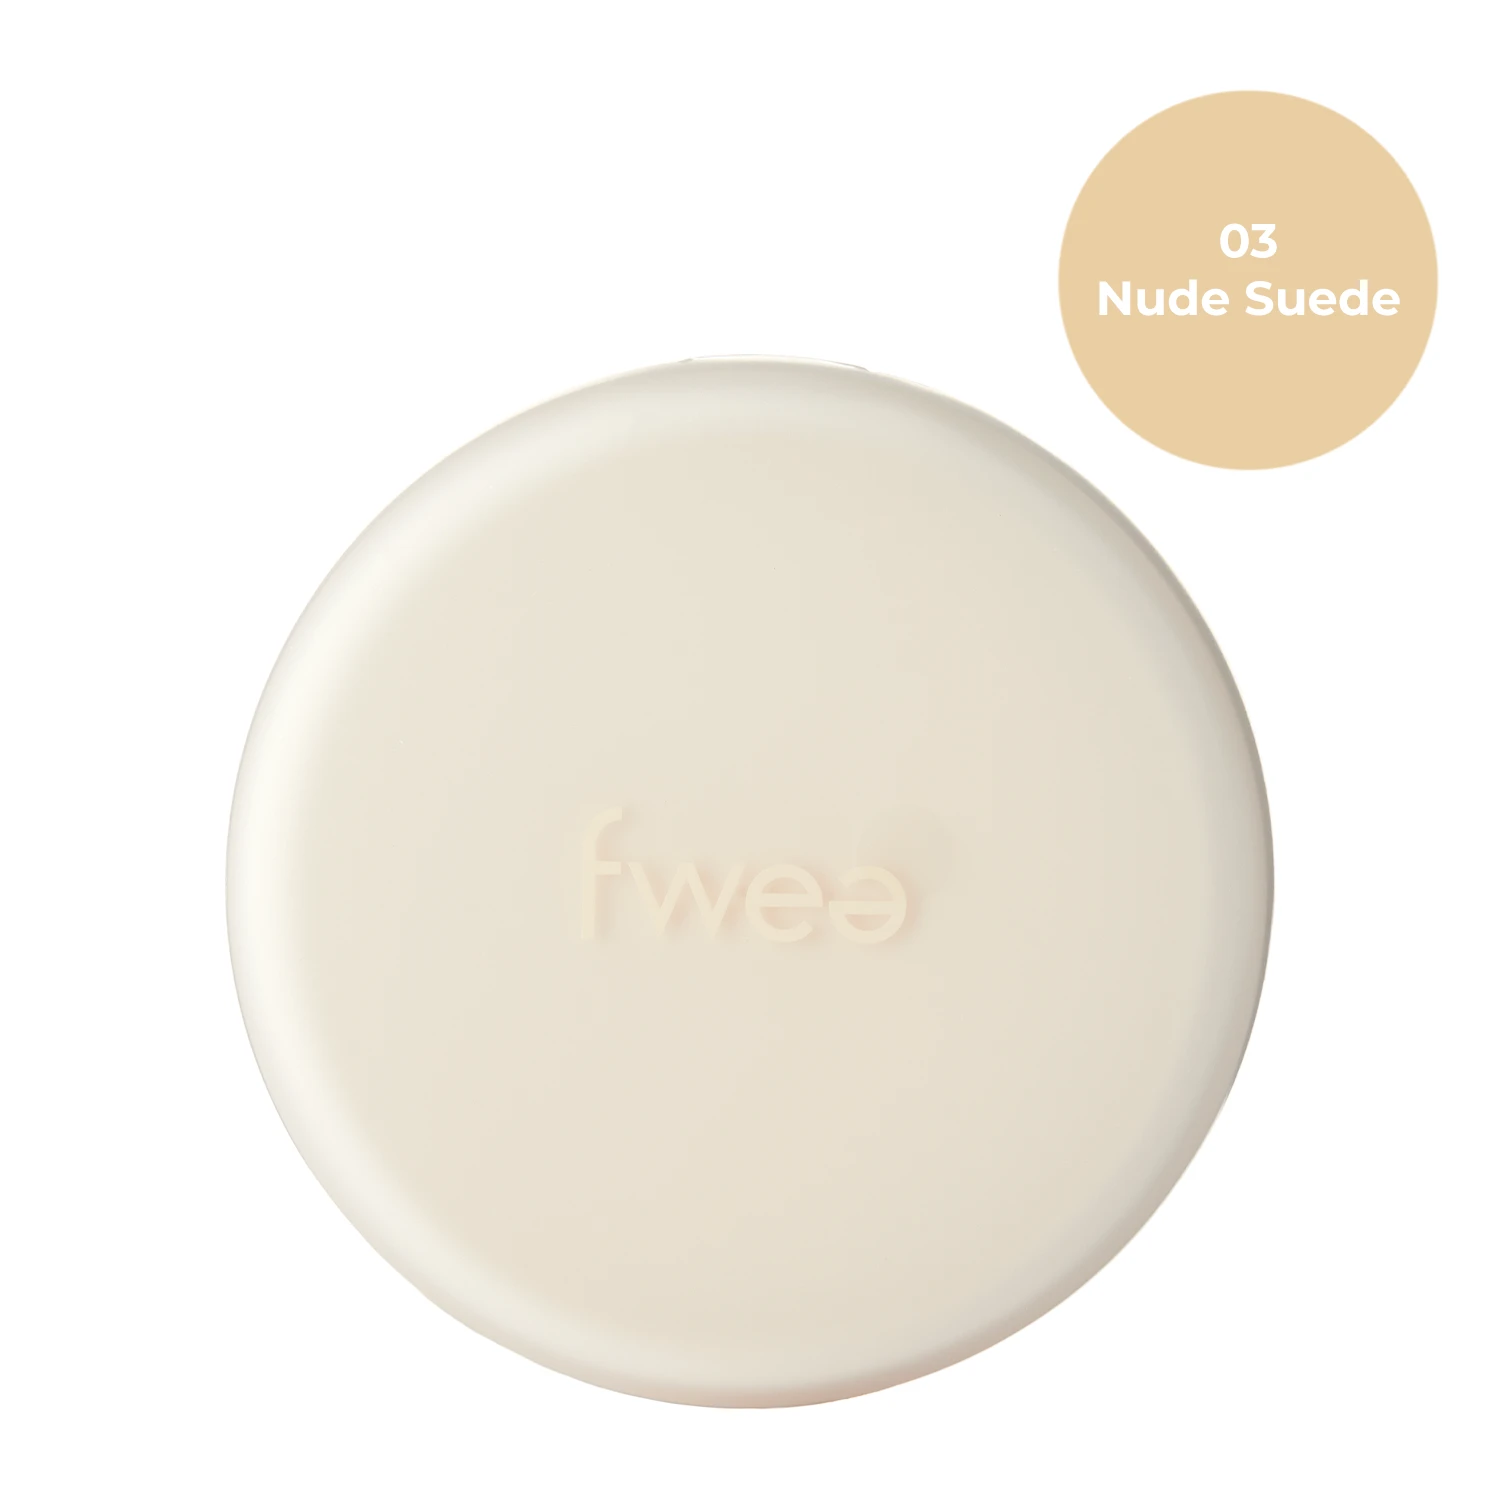 Fwee - Cushion Suede SPF50+ PA+++ - Nawilżający Podkład do Twarzy w Poduszce - 03 Nude Suede - 15g